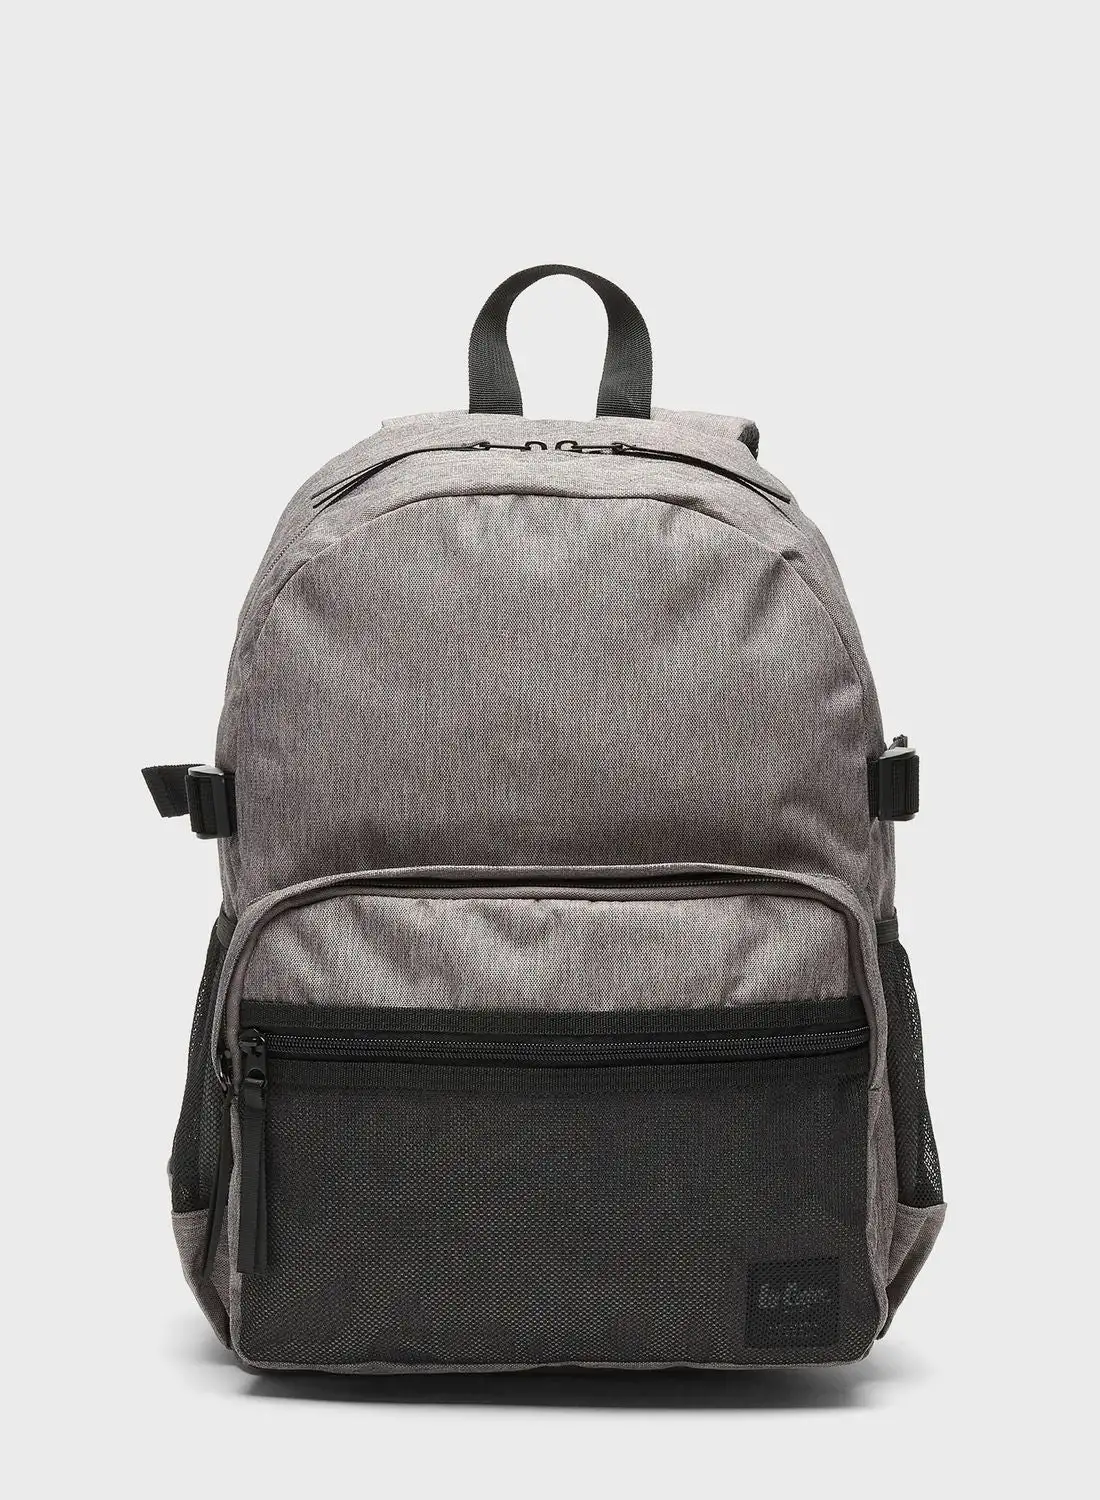 Lee Cooper Essential Backpack